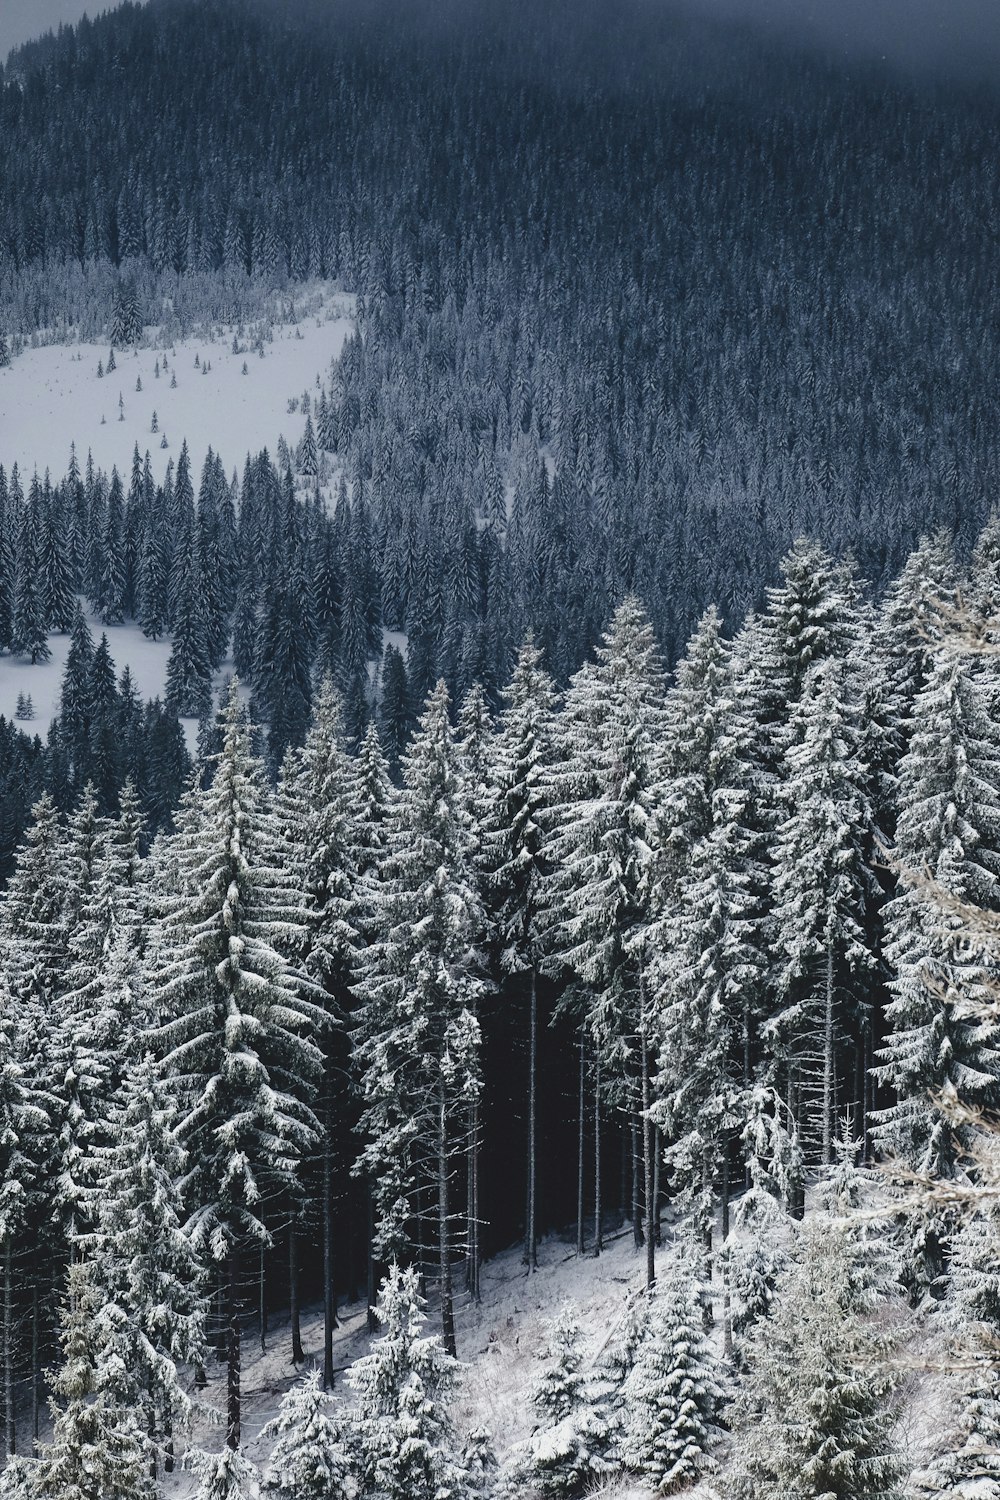 Photographie aérienne de pins recouverts de neige